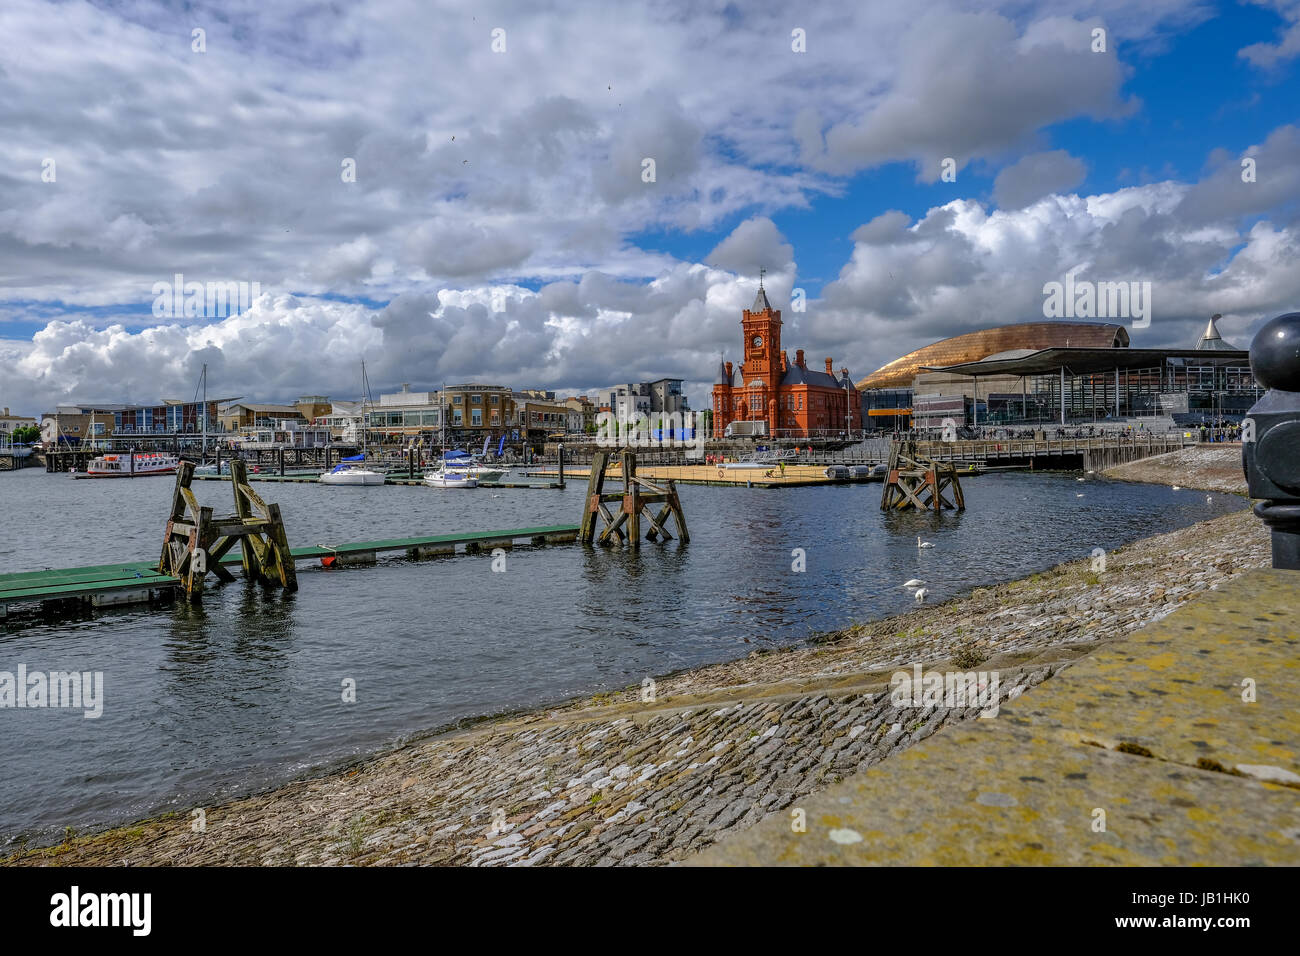 Bucht von Cardiff, Cardiff, Wales - 20. Mai 2017: Ansicht von Cardiff Bay mit Regierung Builidngs und Waterfront. Stockfoto